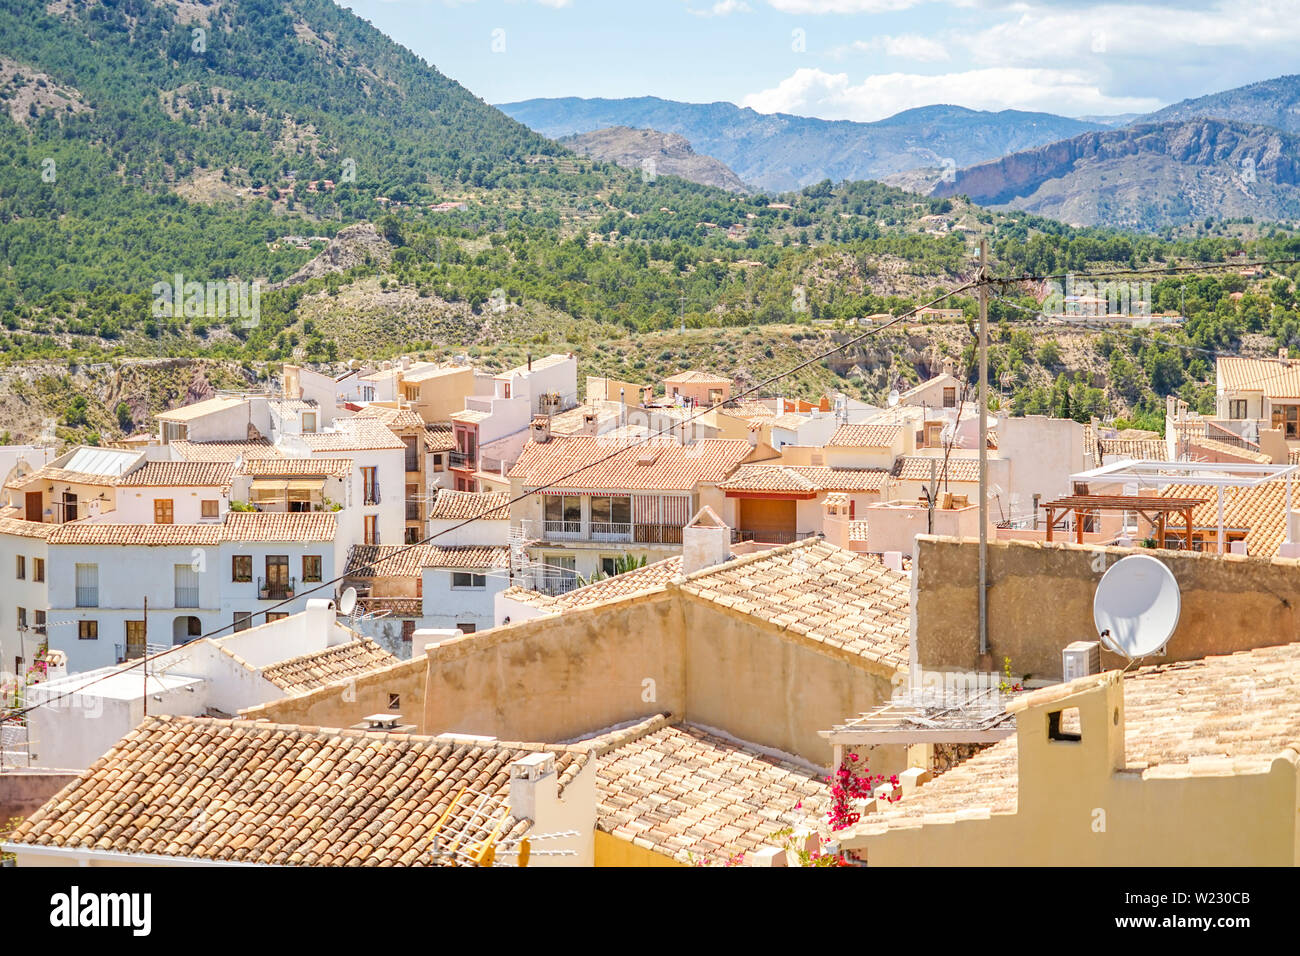 Benidorm, Espagne - 12 juin 2019 : Vue de Finestrat ville. Belles maisons blanches avec des toits de la vieille ville espagnole de Finestrat, Espagne Banque D'Images